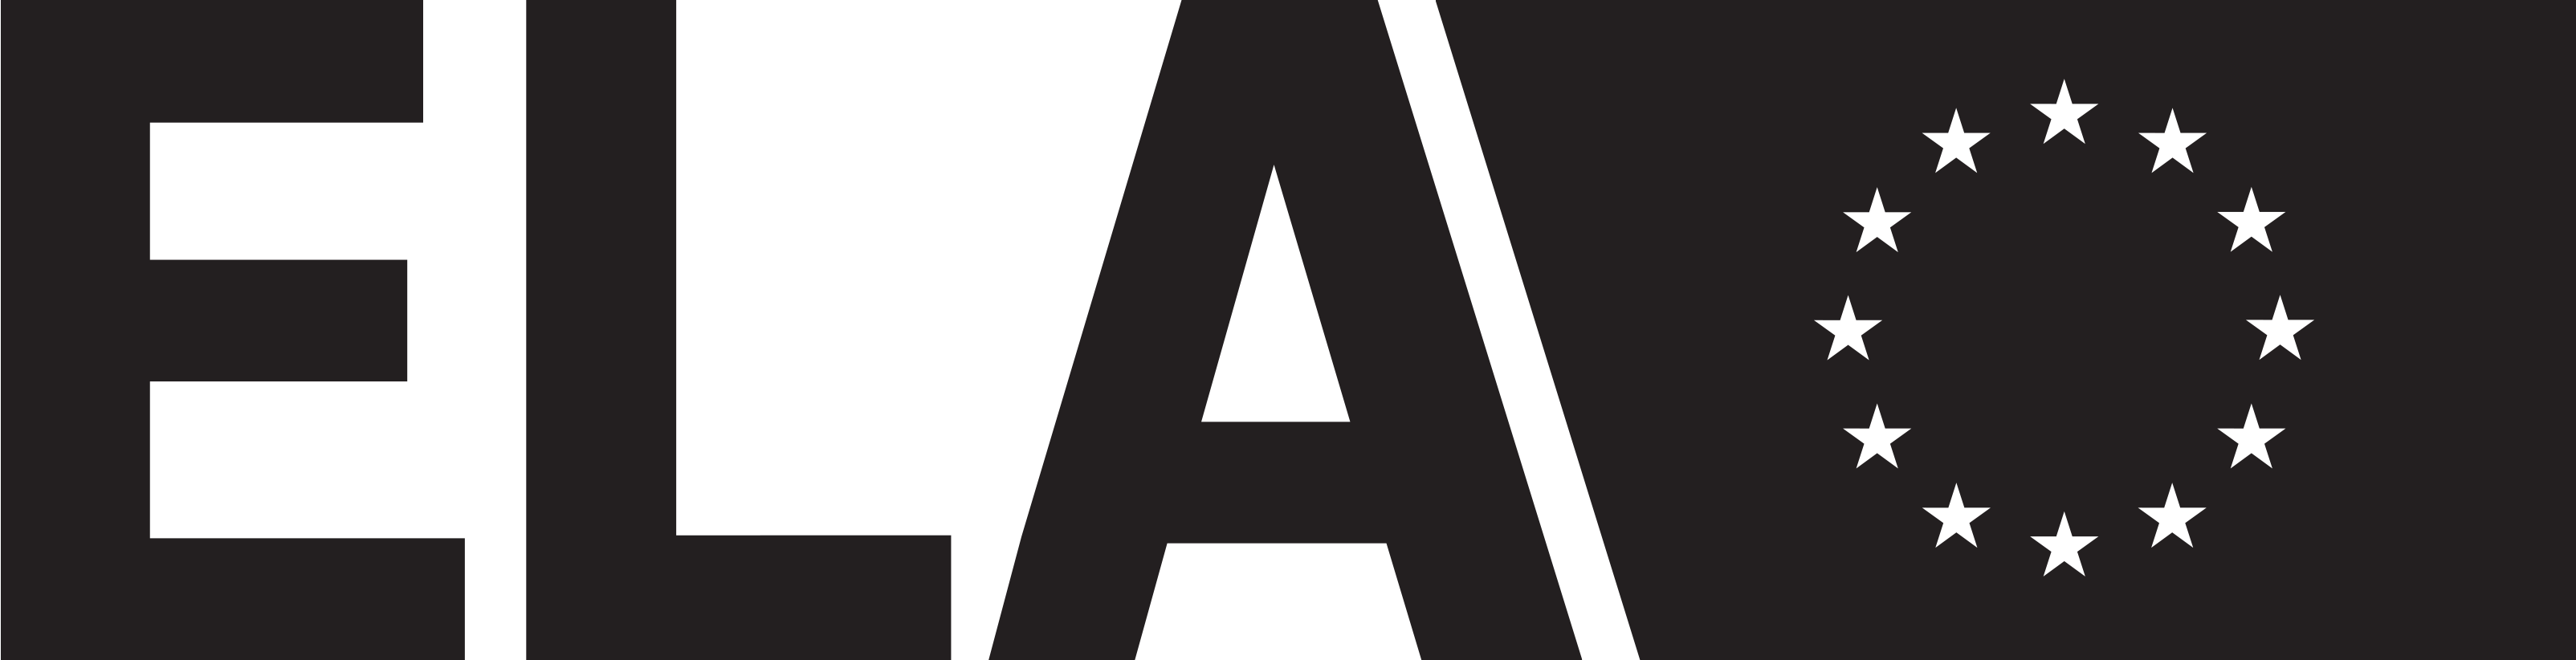 Den Europæiske Arbejdsmarkedsmyndighed — logo i sort og hvid